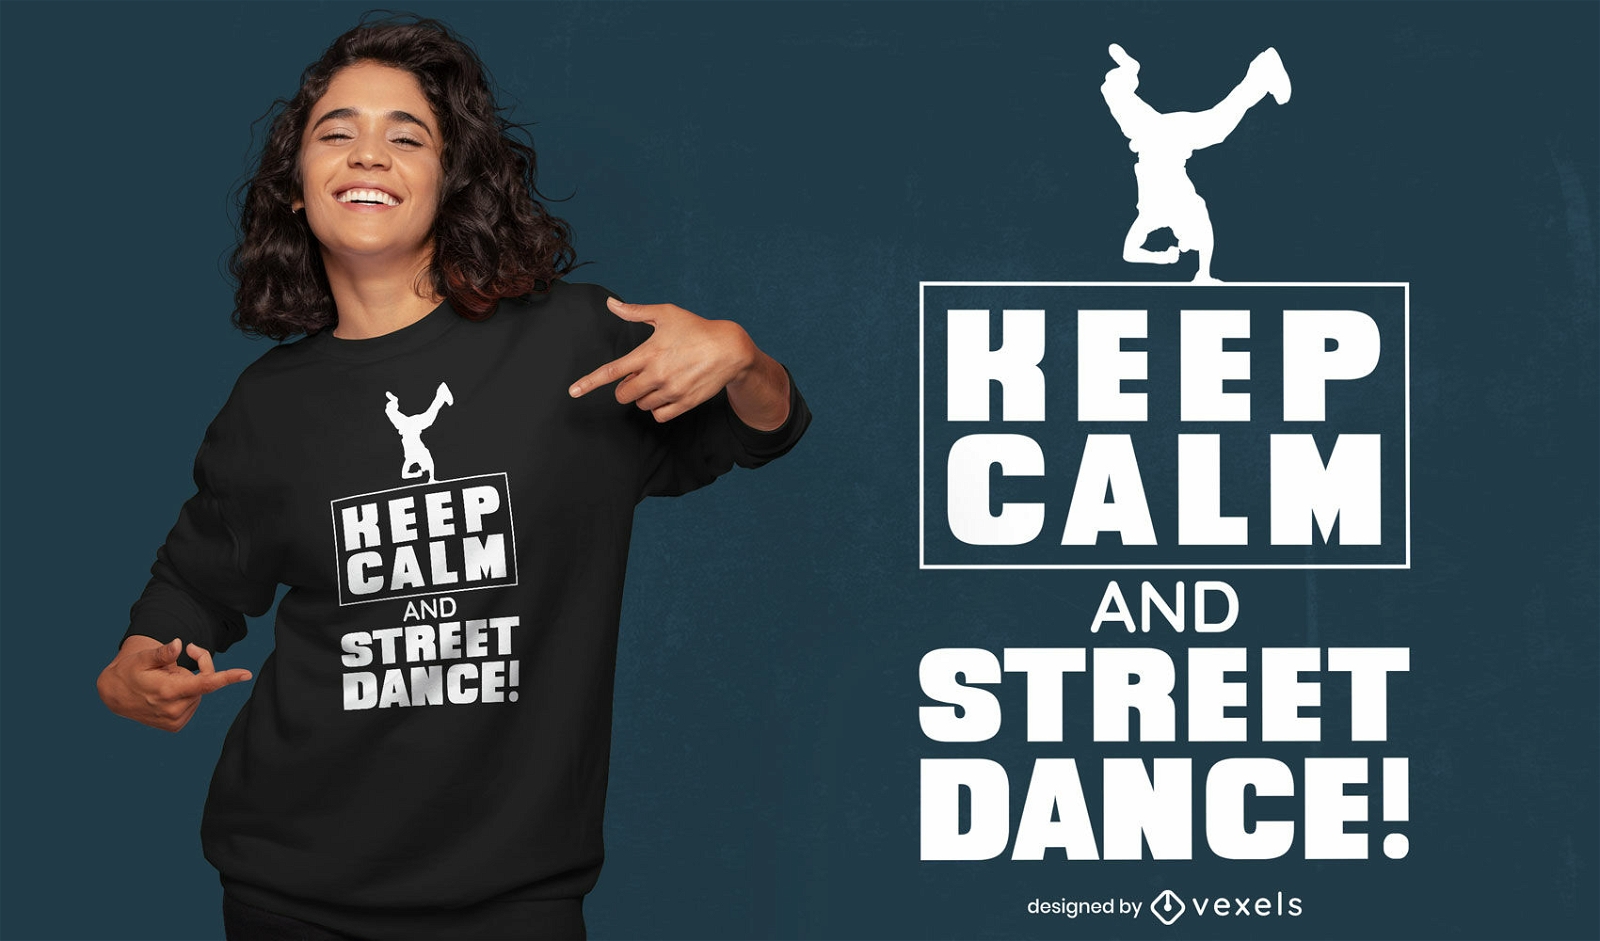 Street dance t-shirt design